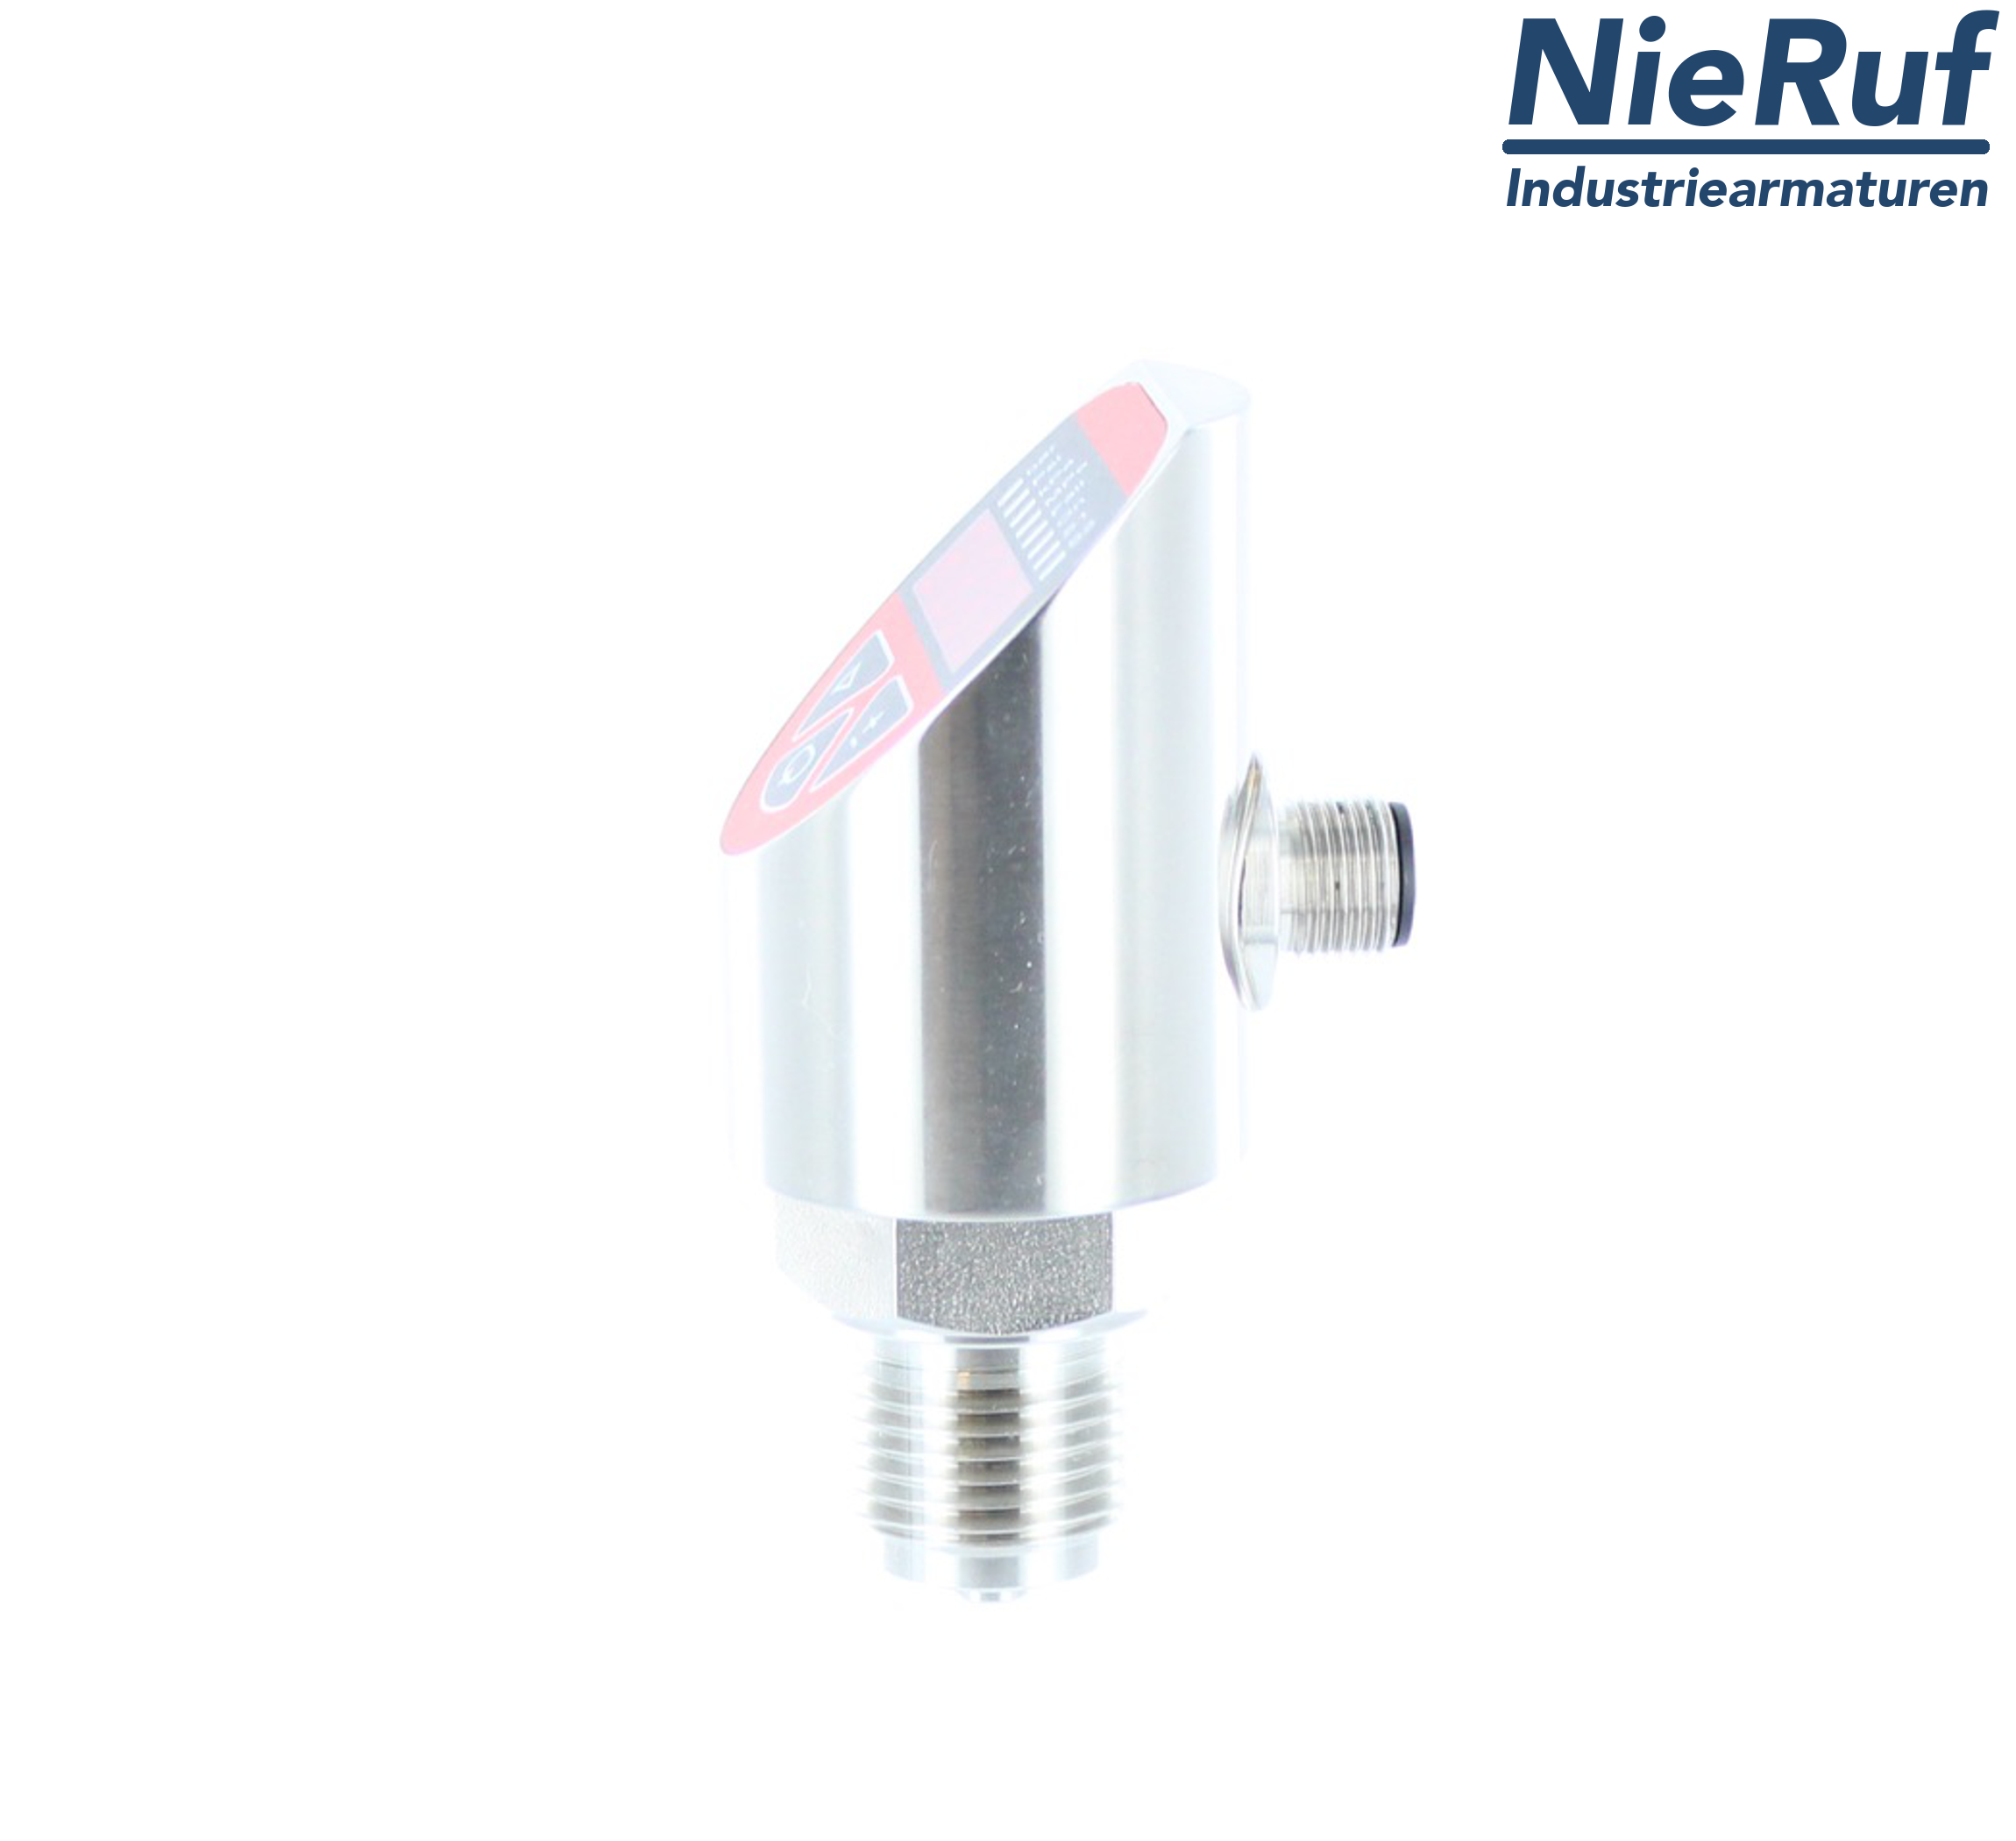 digital pressure sensor G 1/2" B IB 4-wire: 1xPNP, 1x4 - 20mA, Desina FPM 0,0 - 2,5 bar